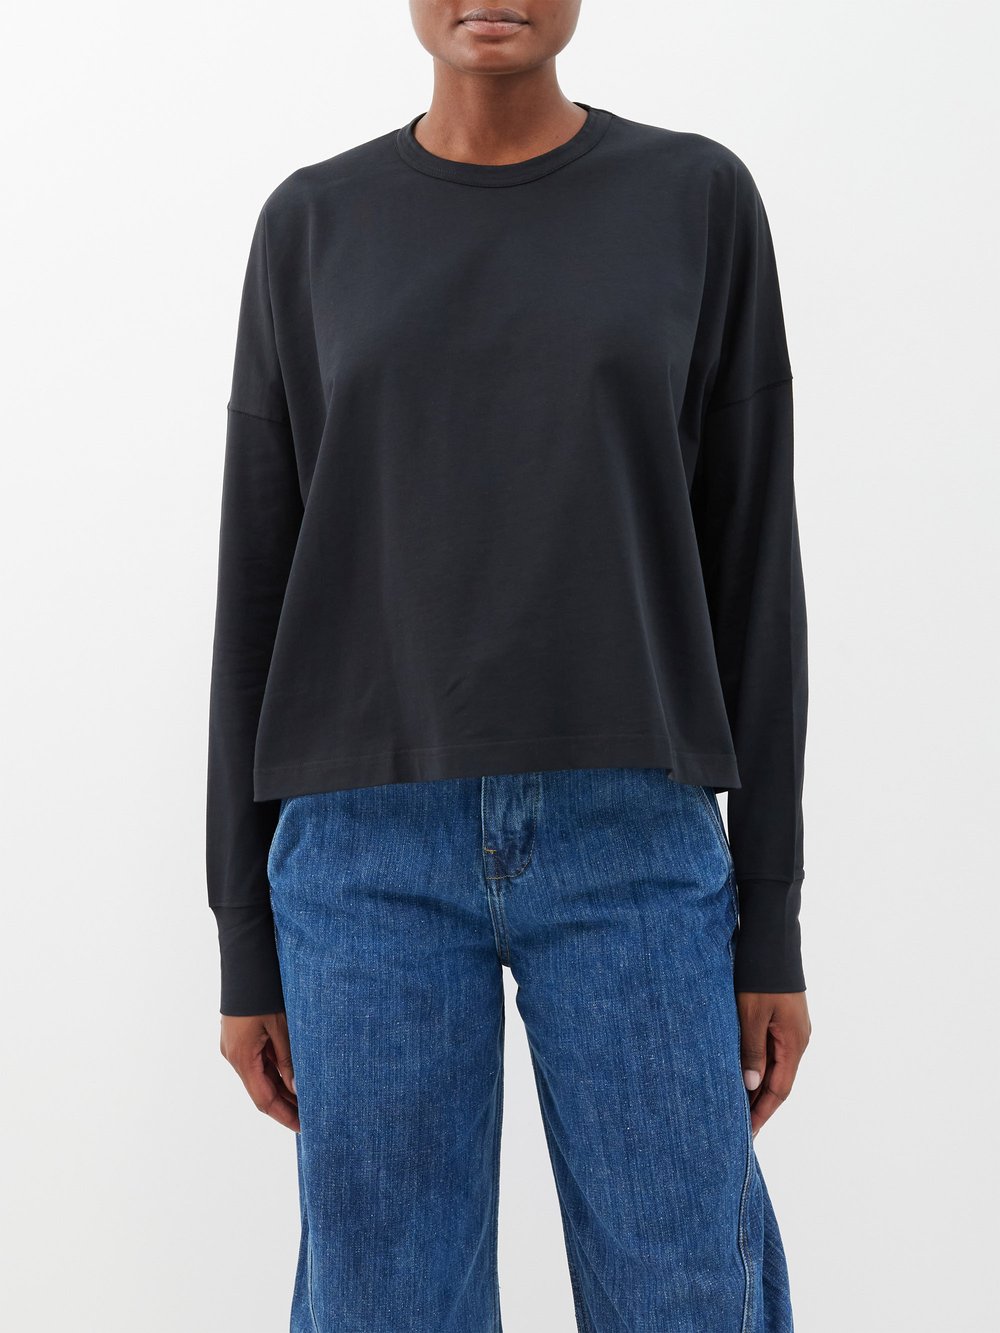 Хлопковая футболка с длинными рукавами и заниженными плечами loop Studio Nicholson, черный кремового цвета альт свитер studio nicholson